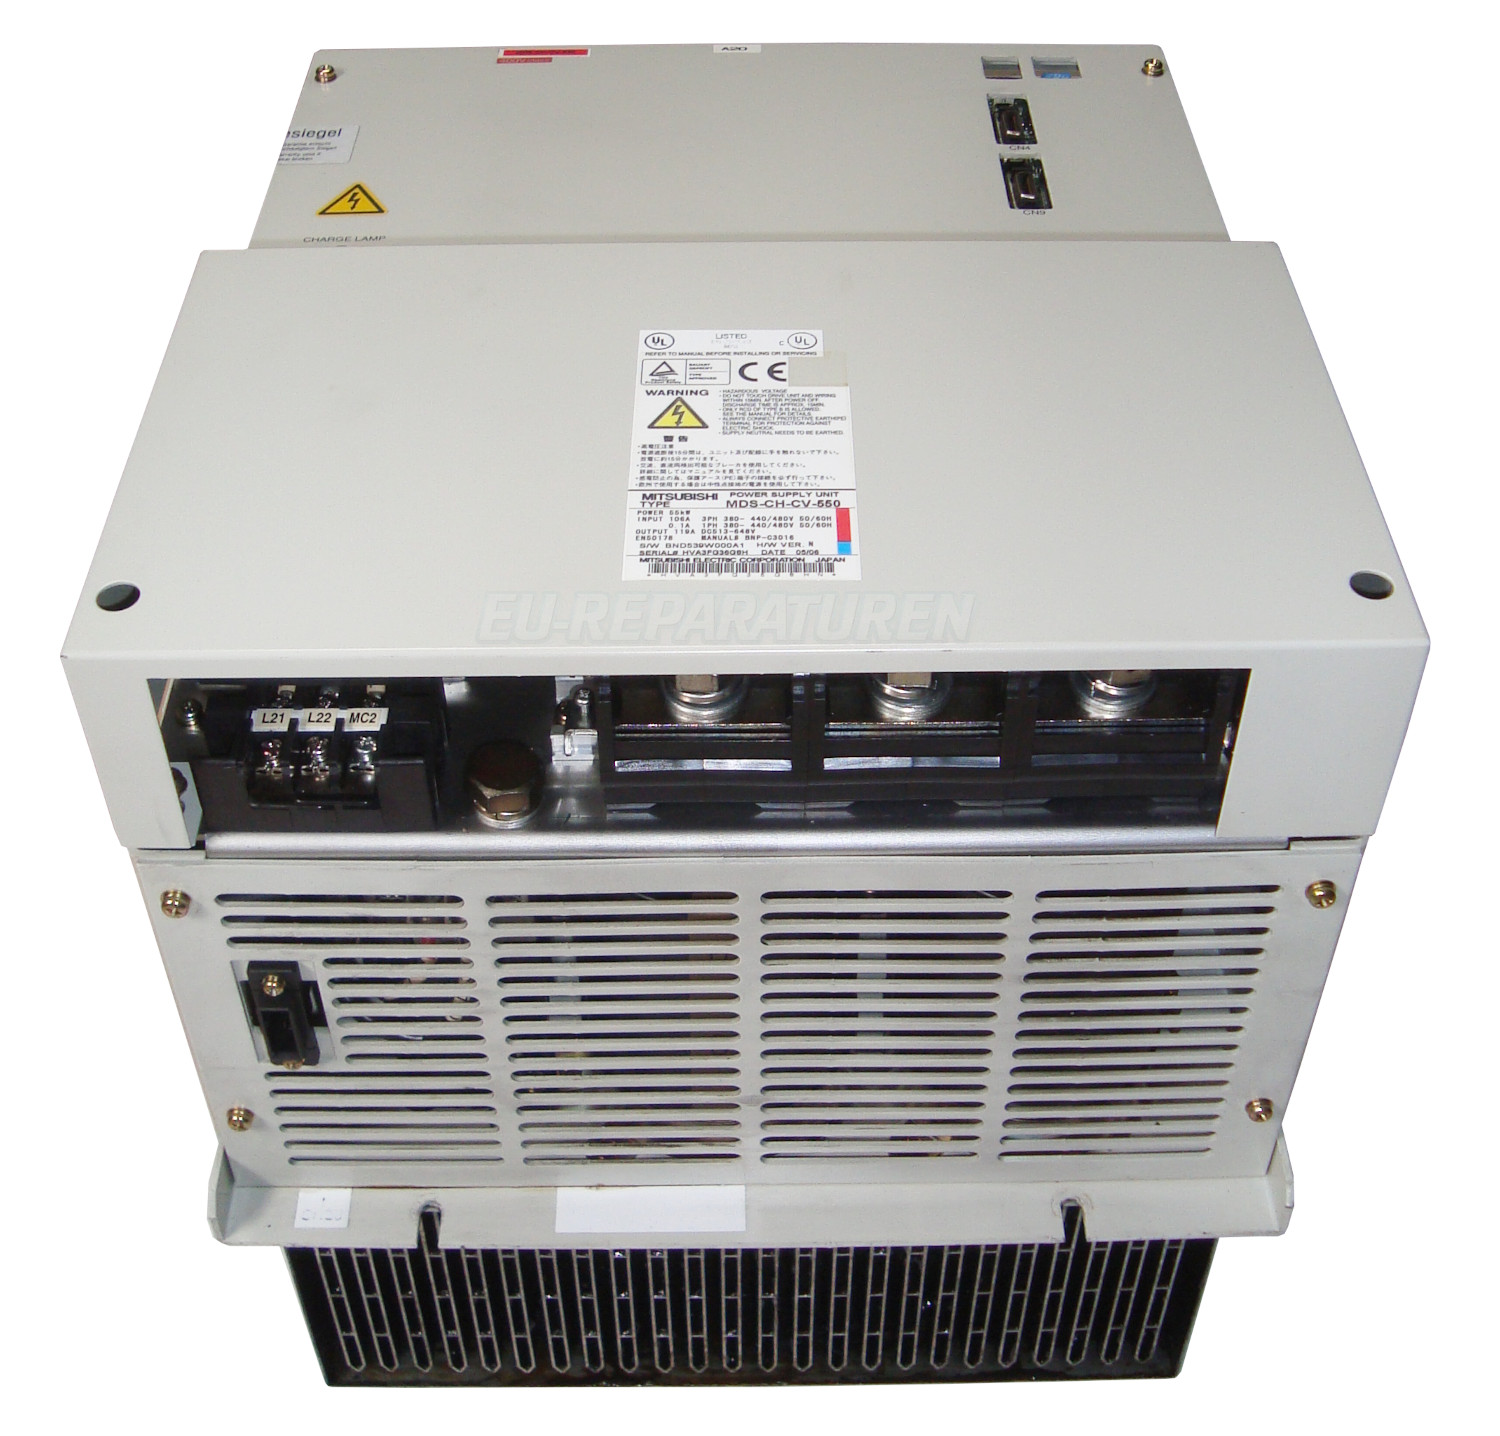 2 Austausch Mds-ch-cv-550 Power Supply Unit Mit Garantie